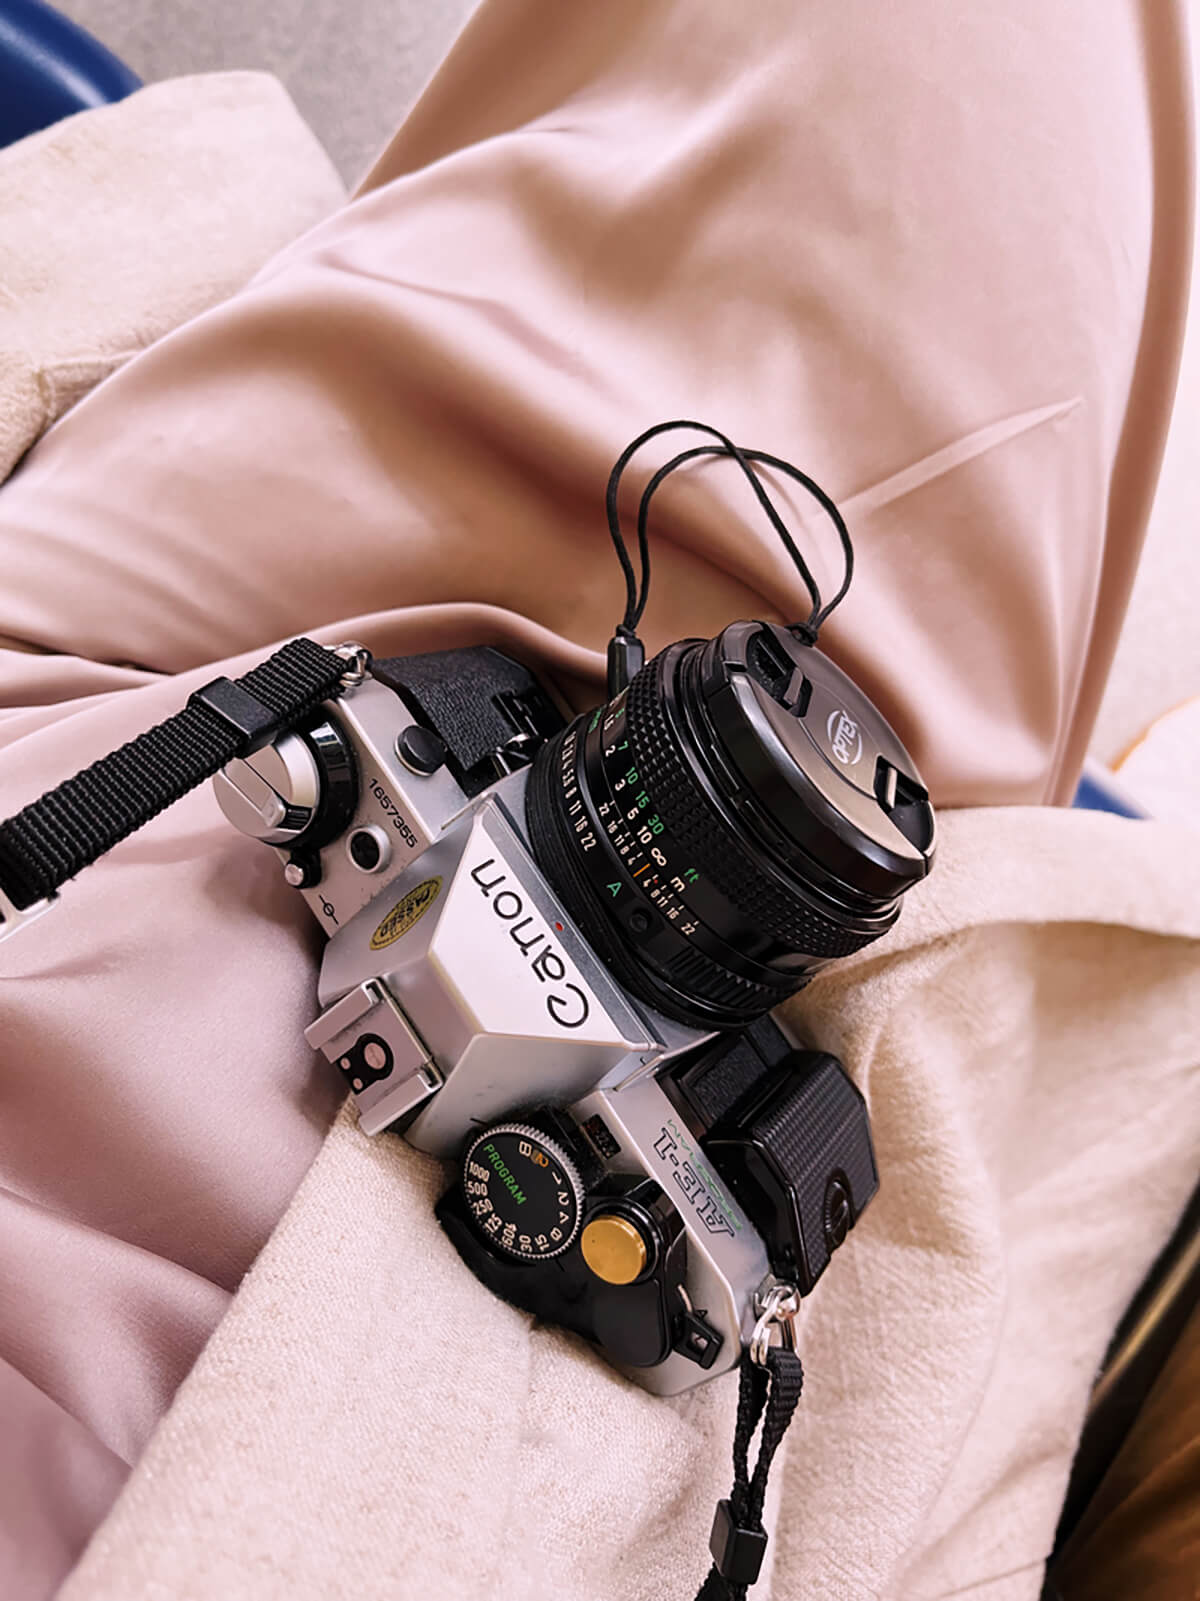 A film camera in my lap